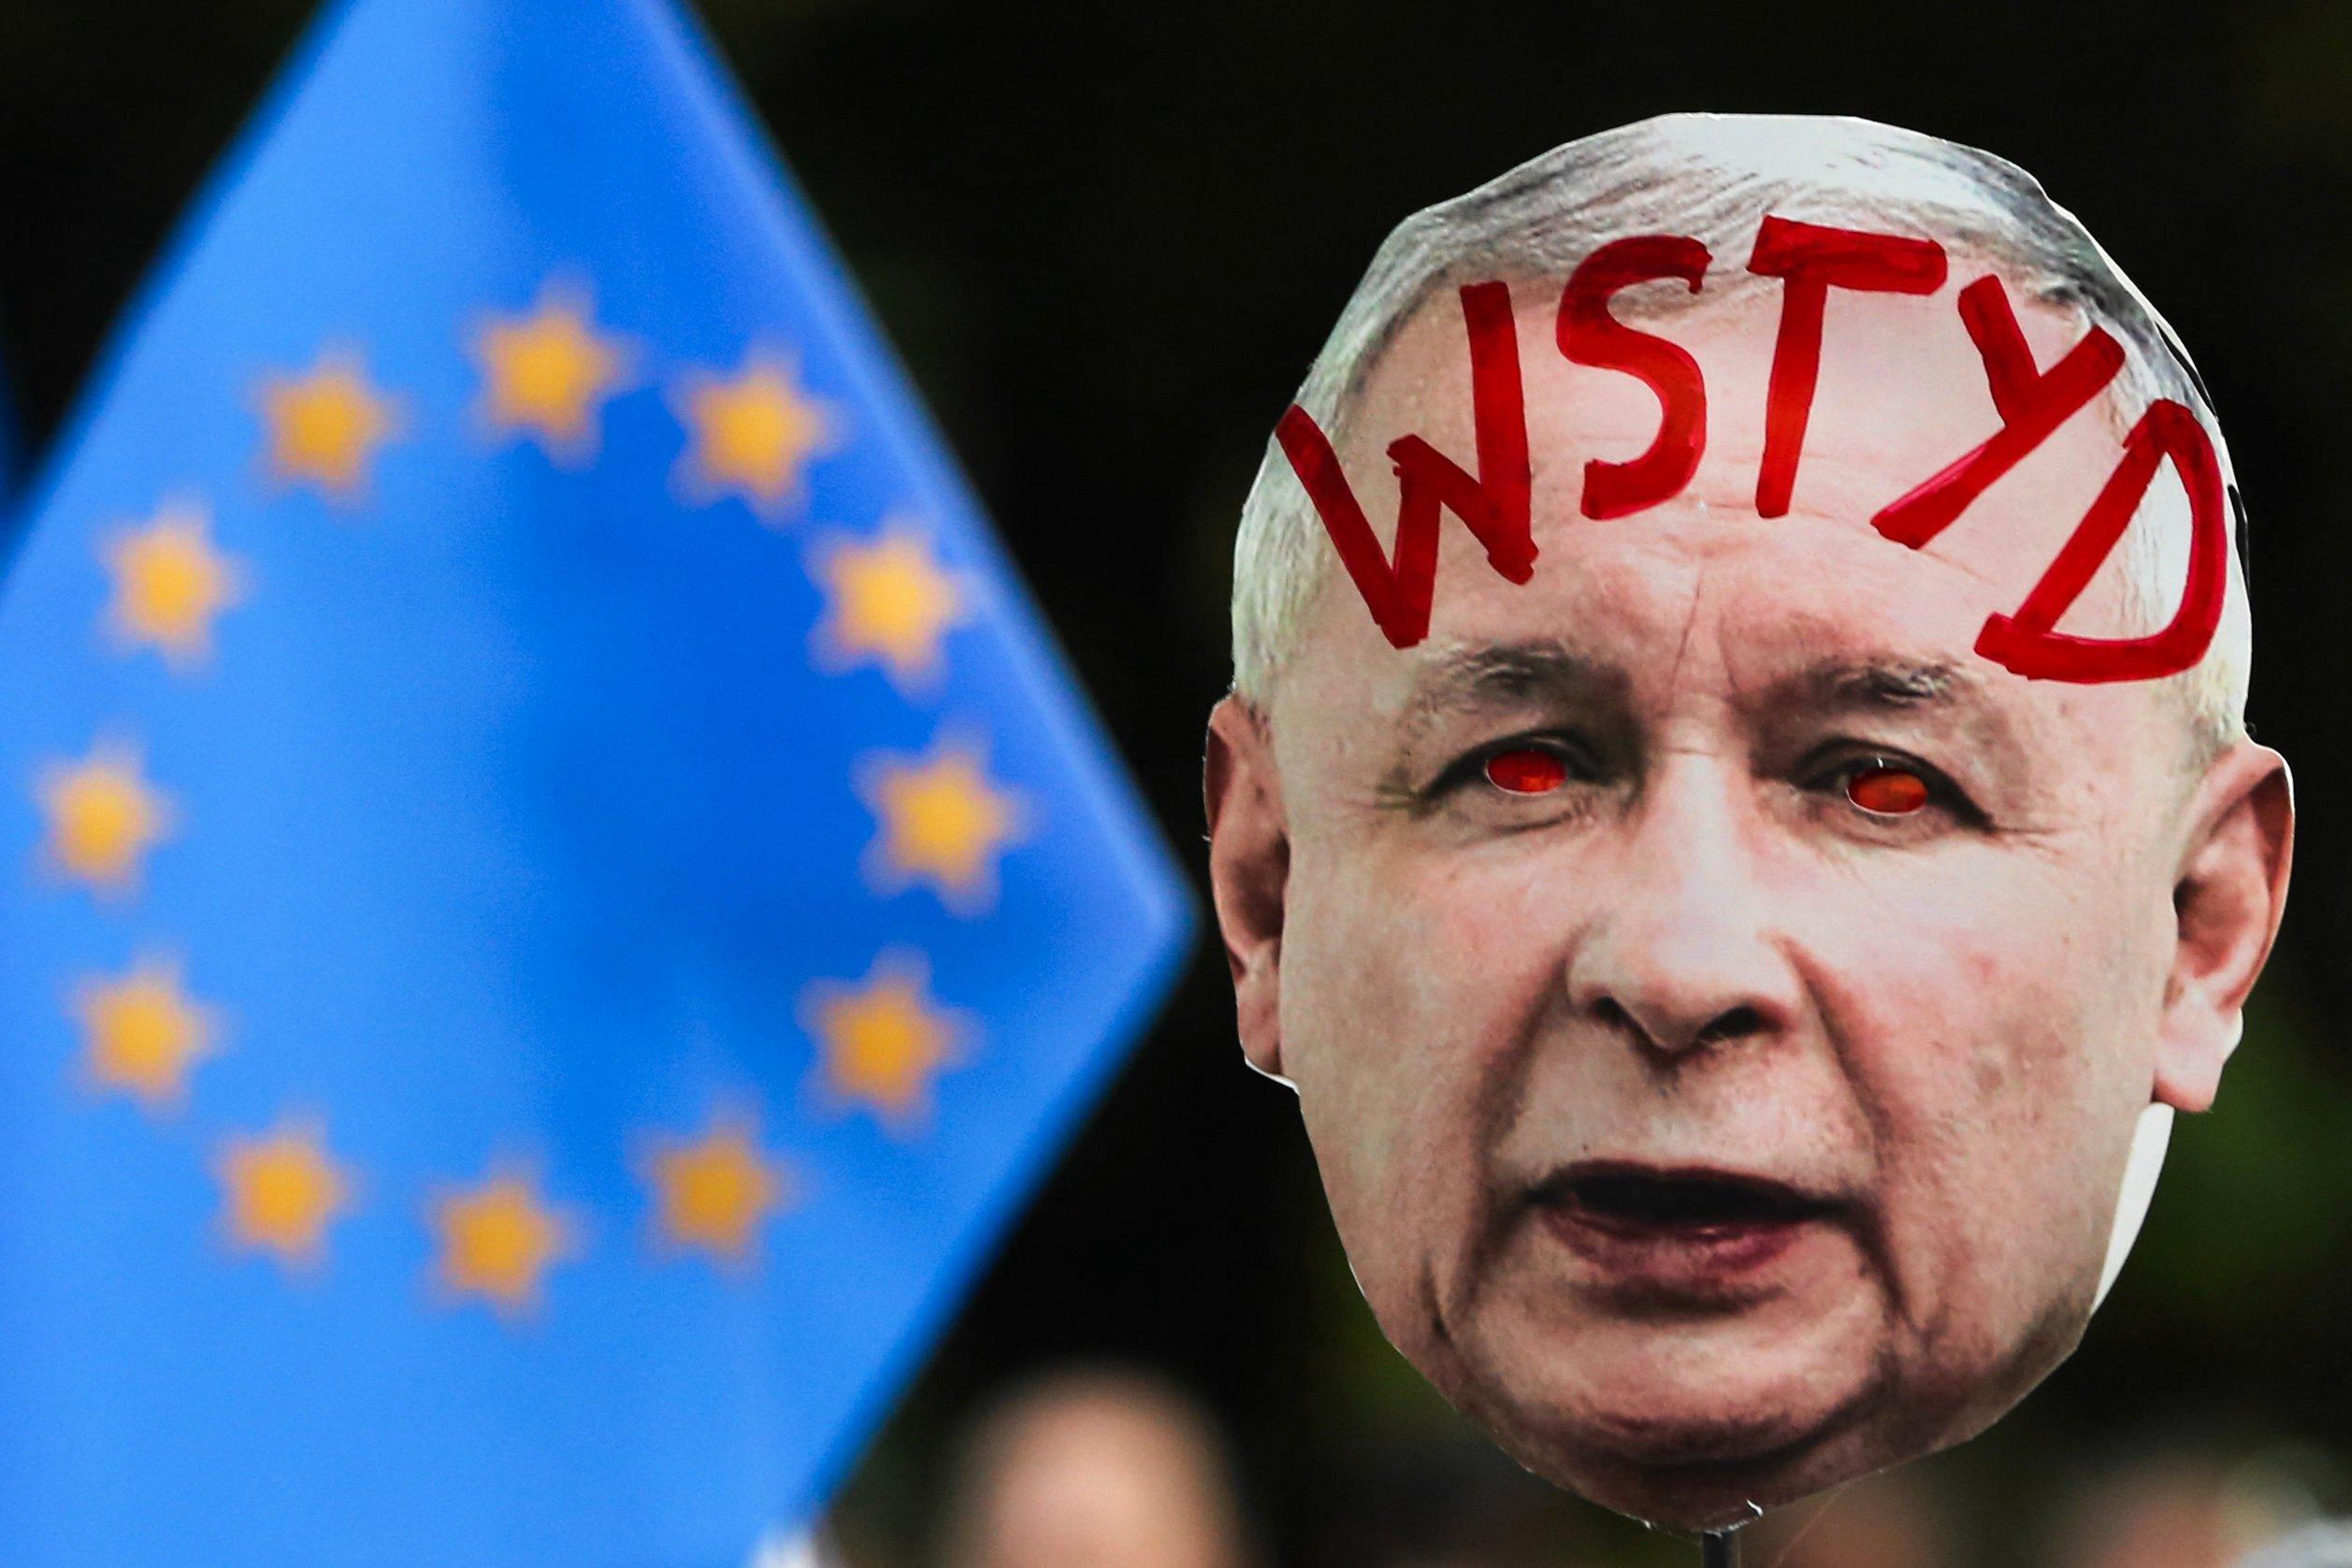 maska z podobizną Jarosława Kaczyńskiego i napisem na czole "wstyd", na tle flagi Unii Europejskiej